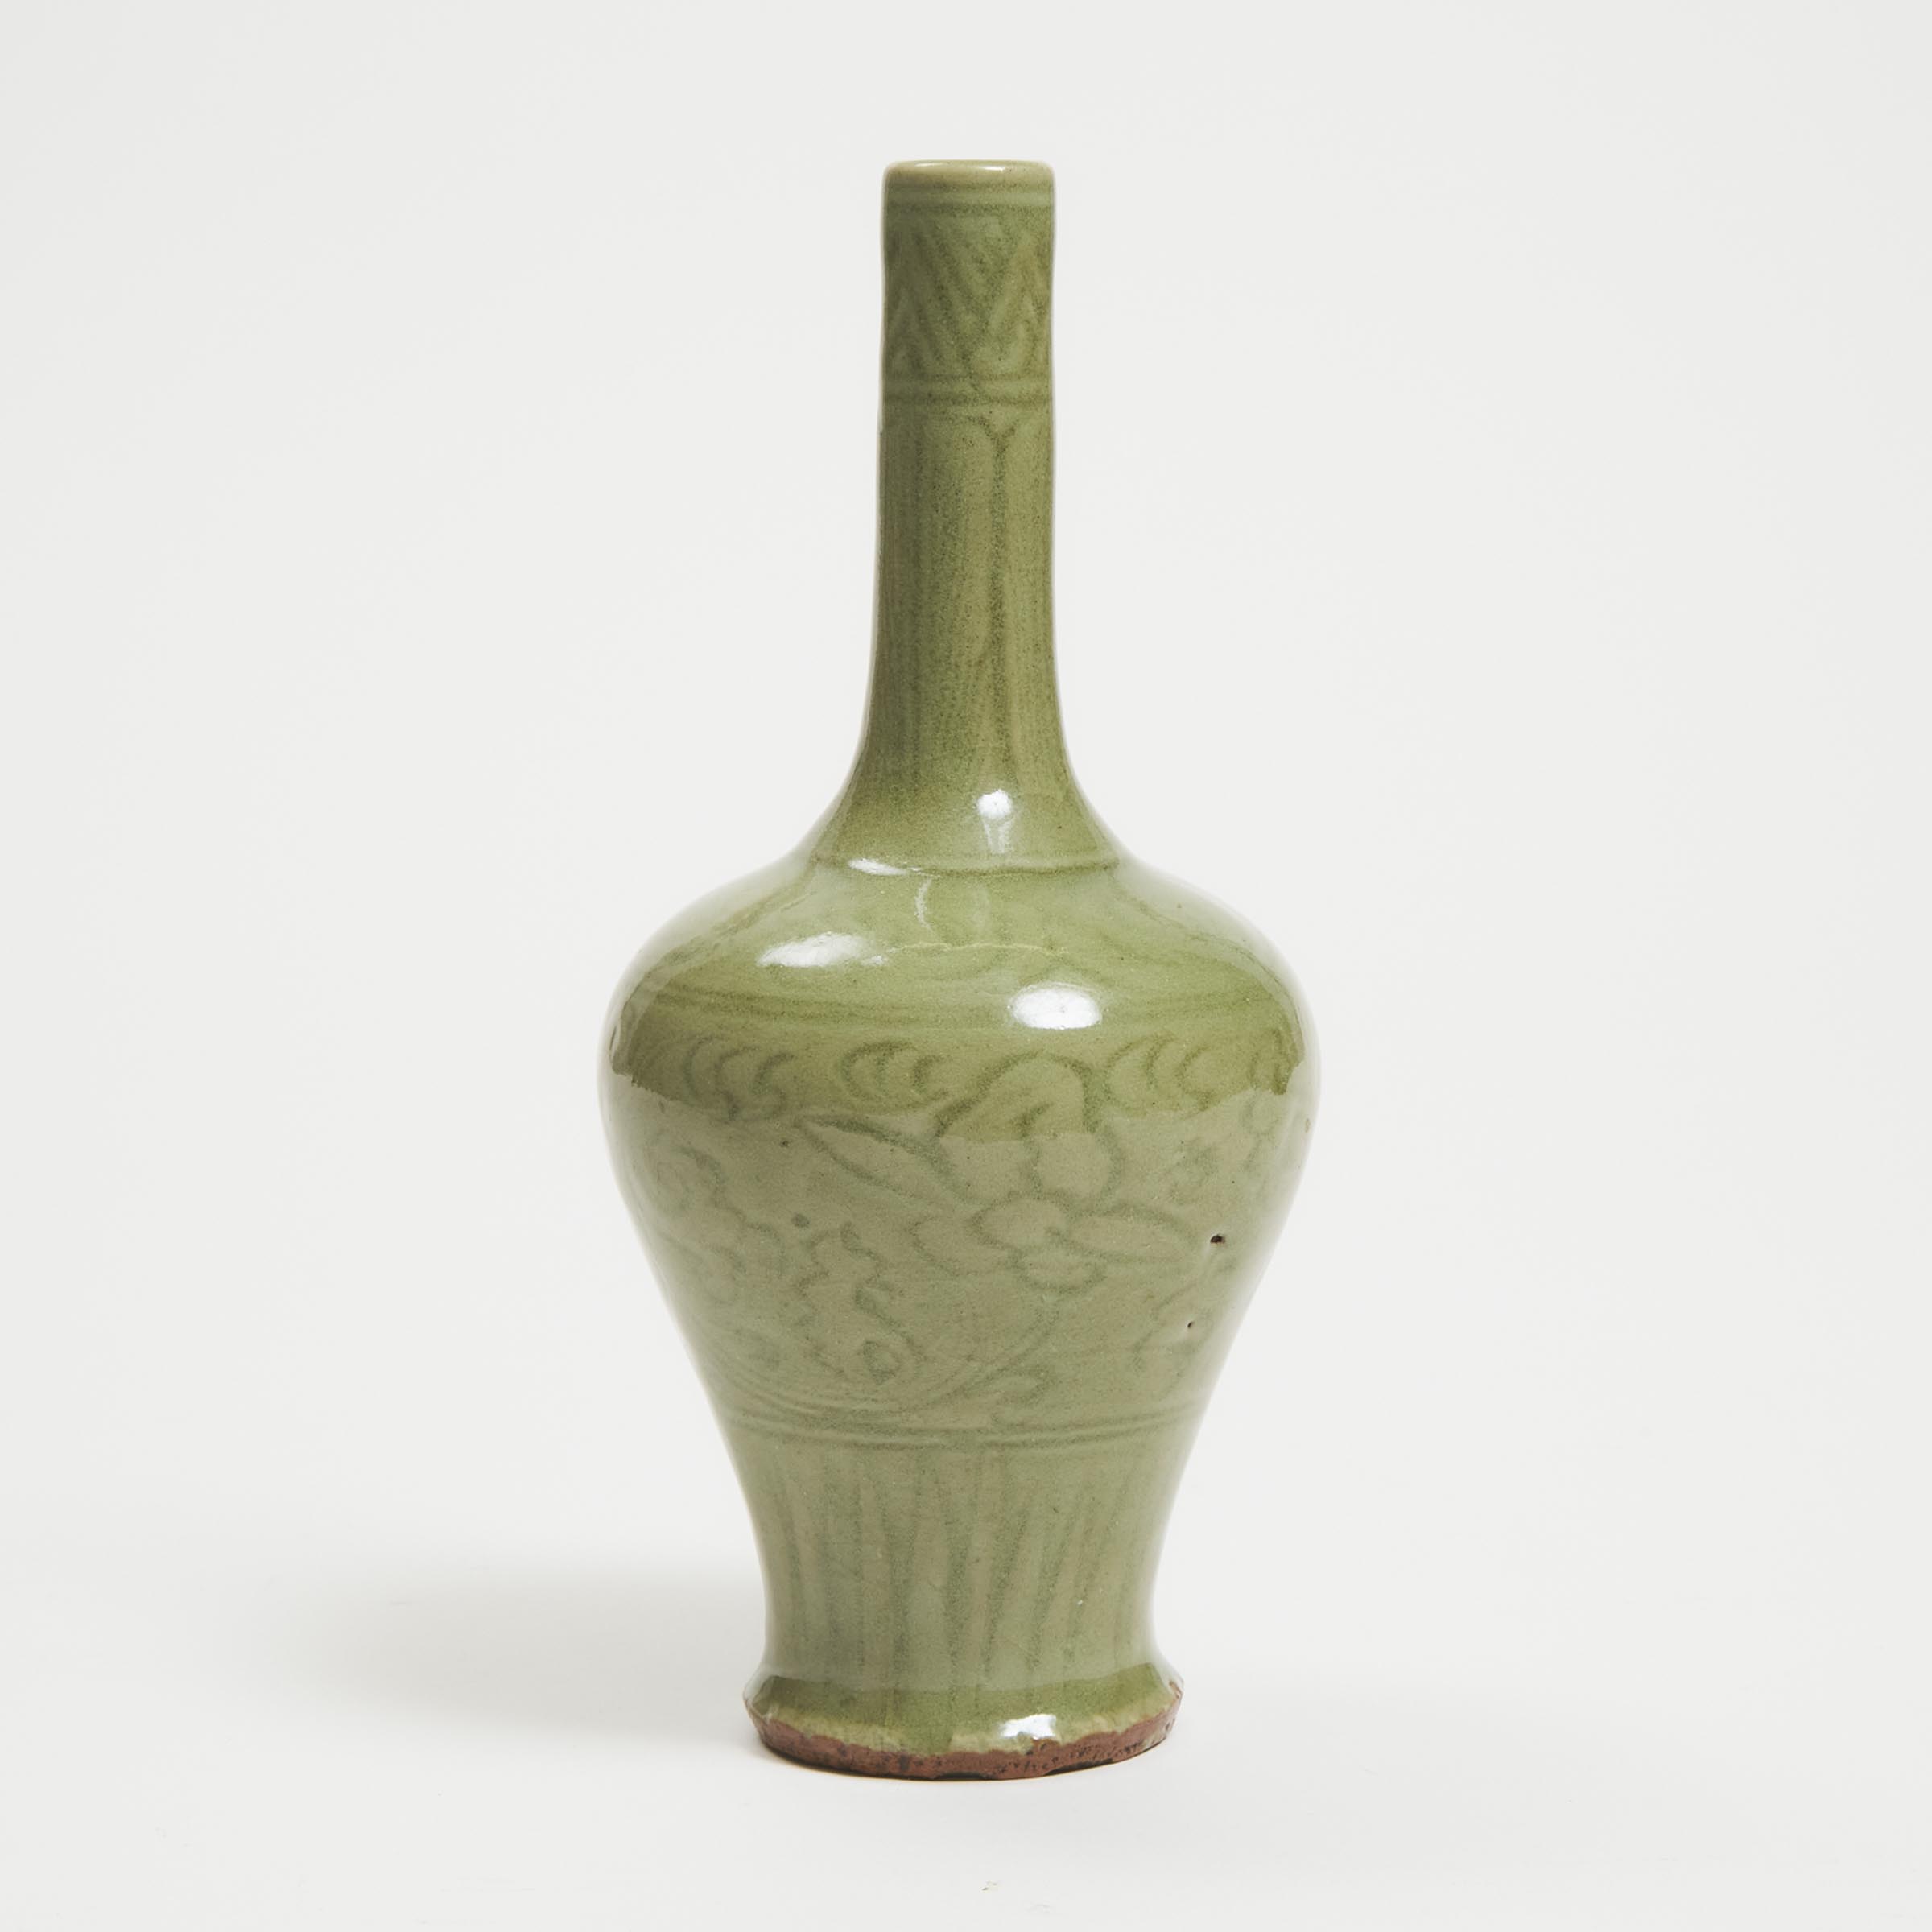 A Carved Yaozhou-Glazed Celadon Bottle Vase, Ming Dynasty (1368-1644)